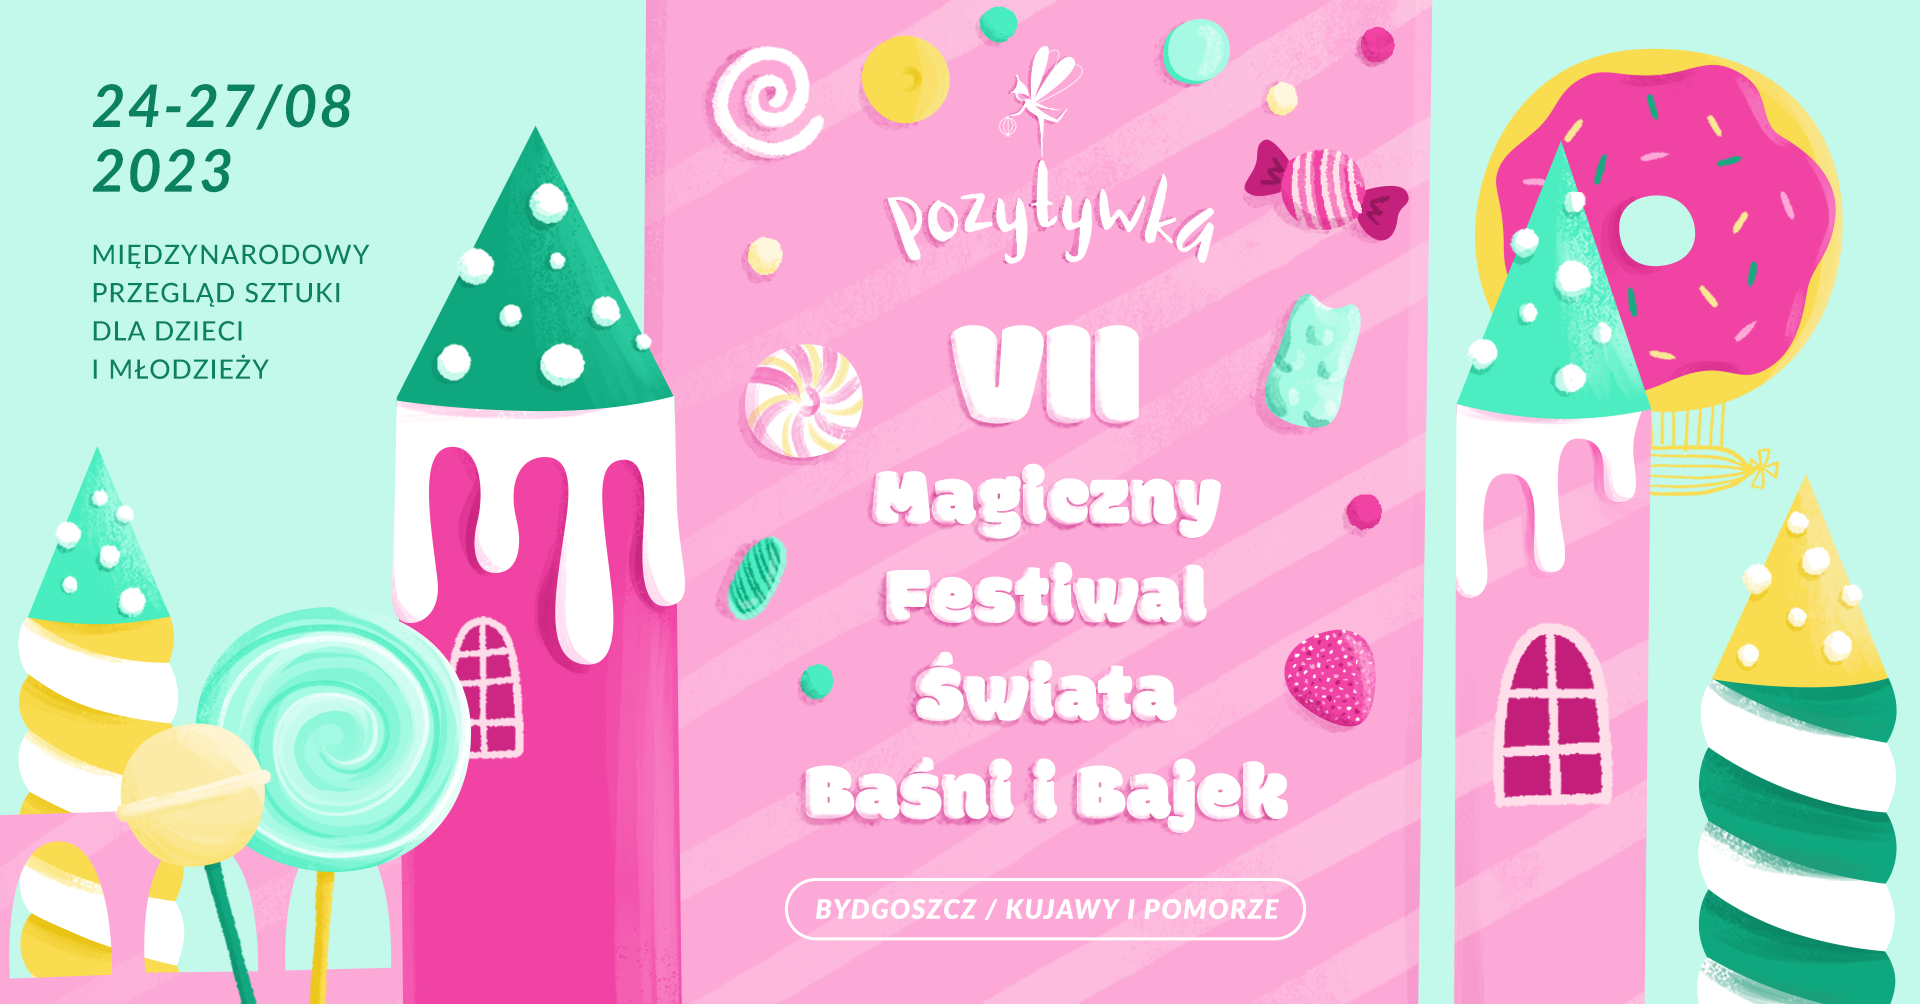 POZYTYWKA - Magiczny Festiwal Świata Baśni i Bajek w Bydgoszczy